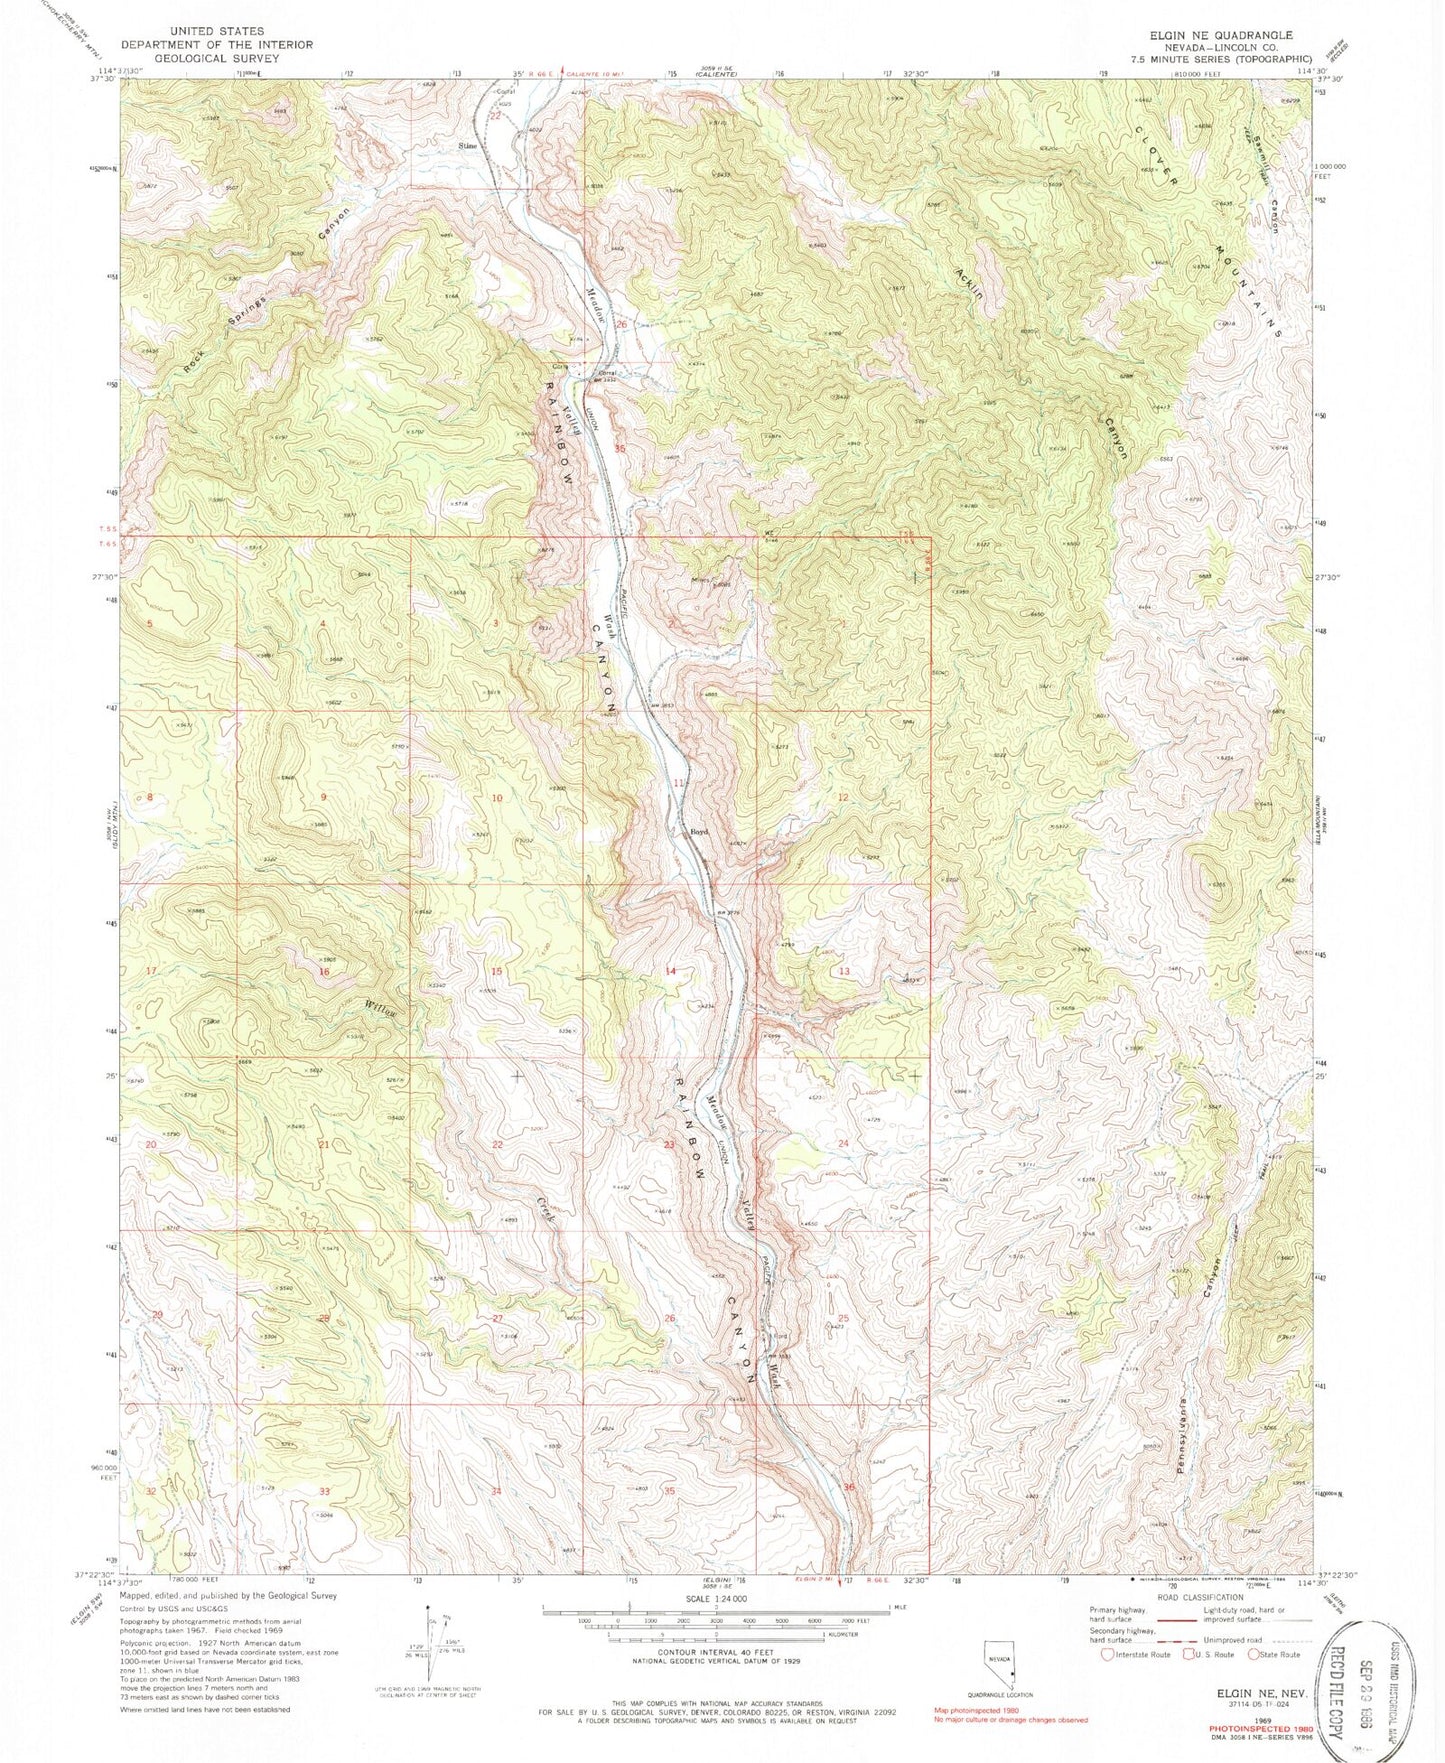 Classic USGS Elgin NE Nevada 7.5'x7.5' Topo Map Image